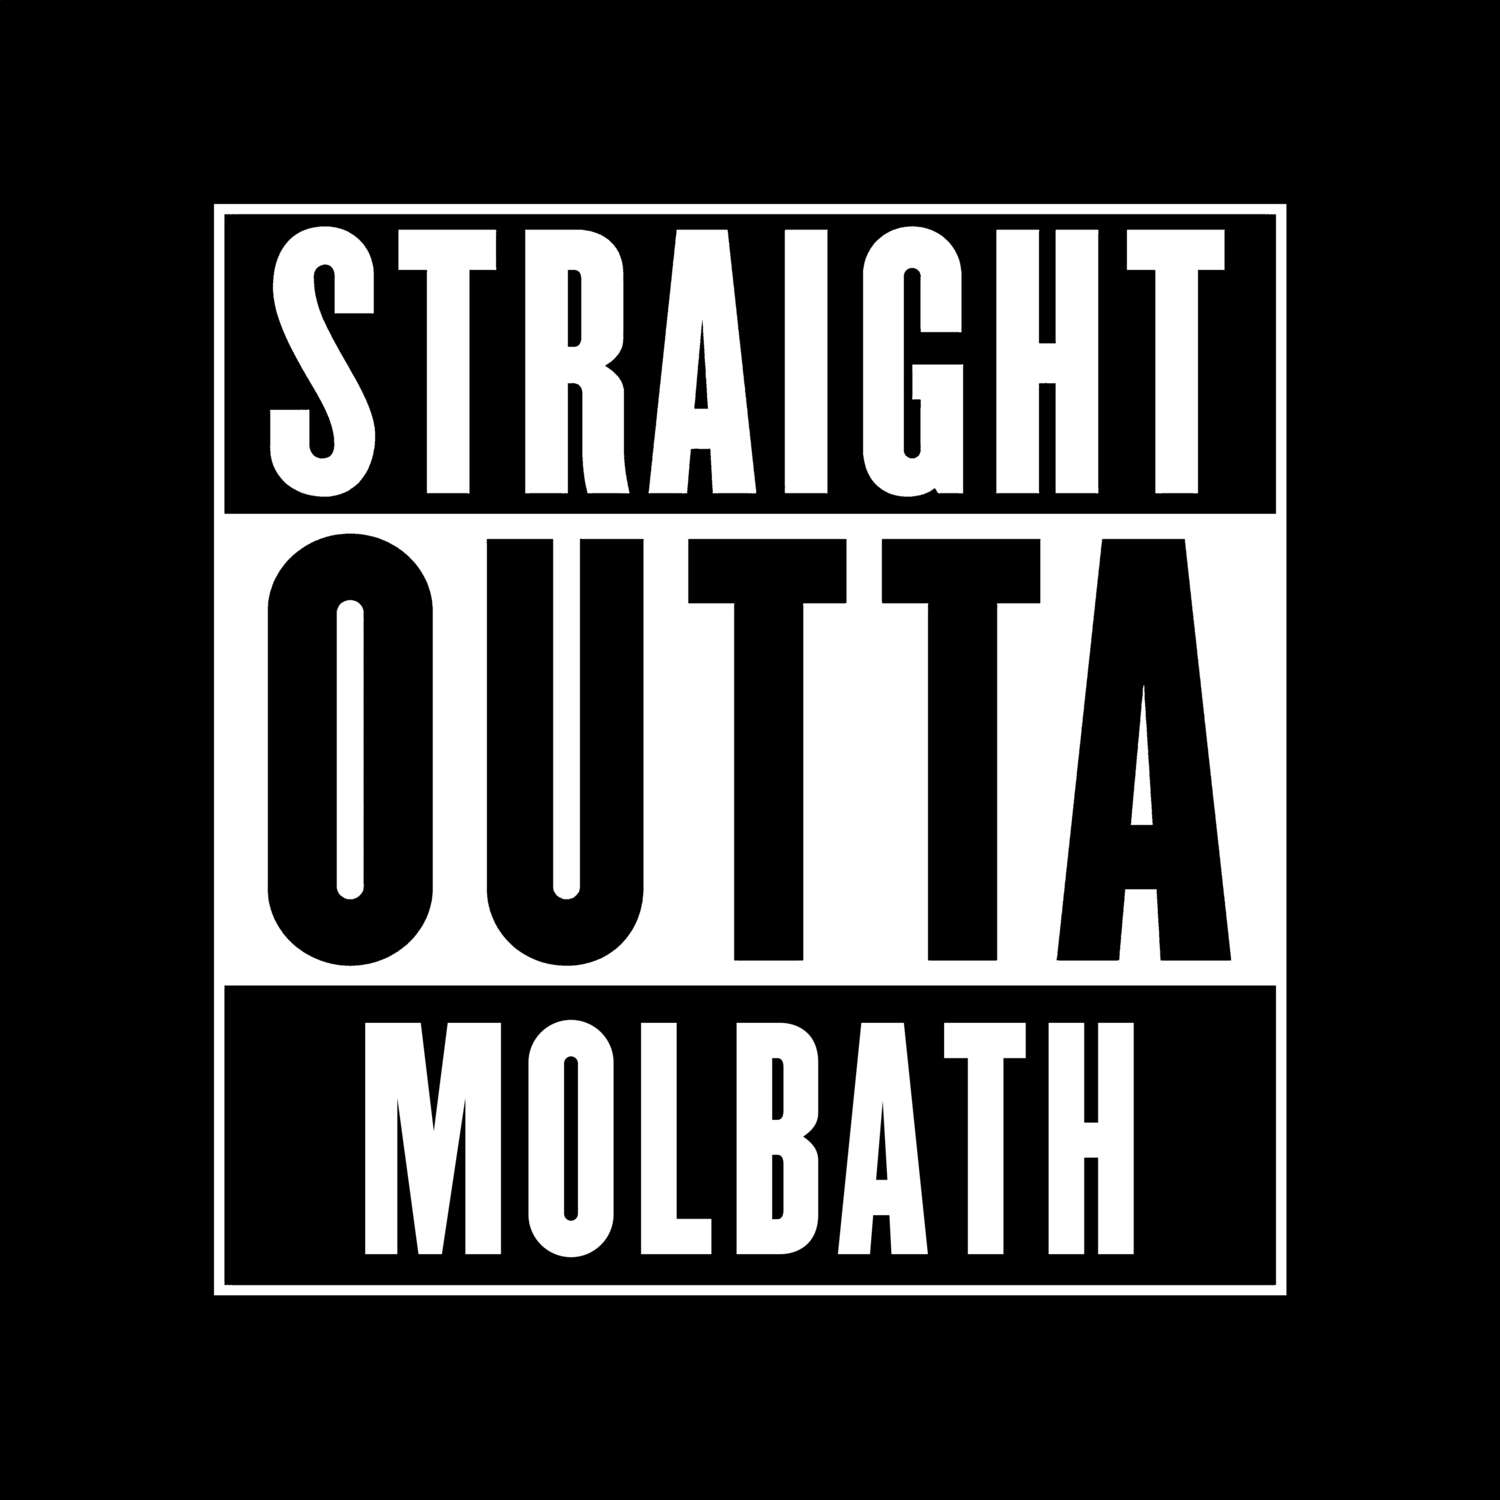 Molbath T-Shirt »Straight Outta«